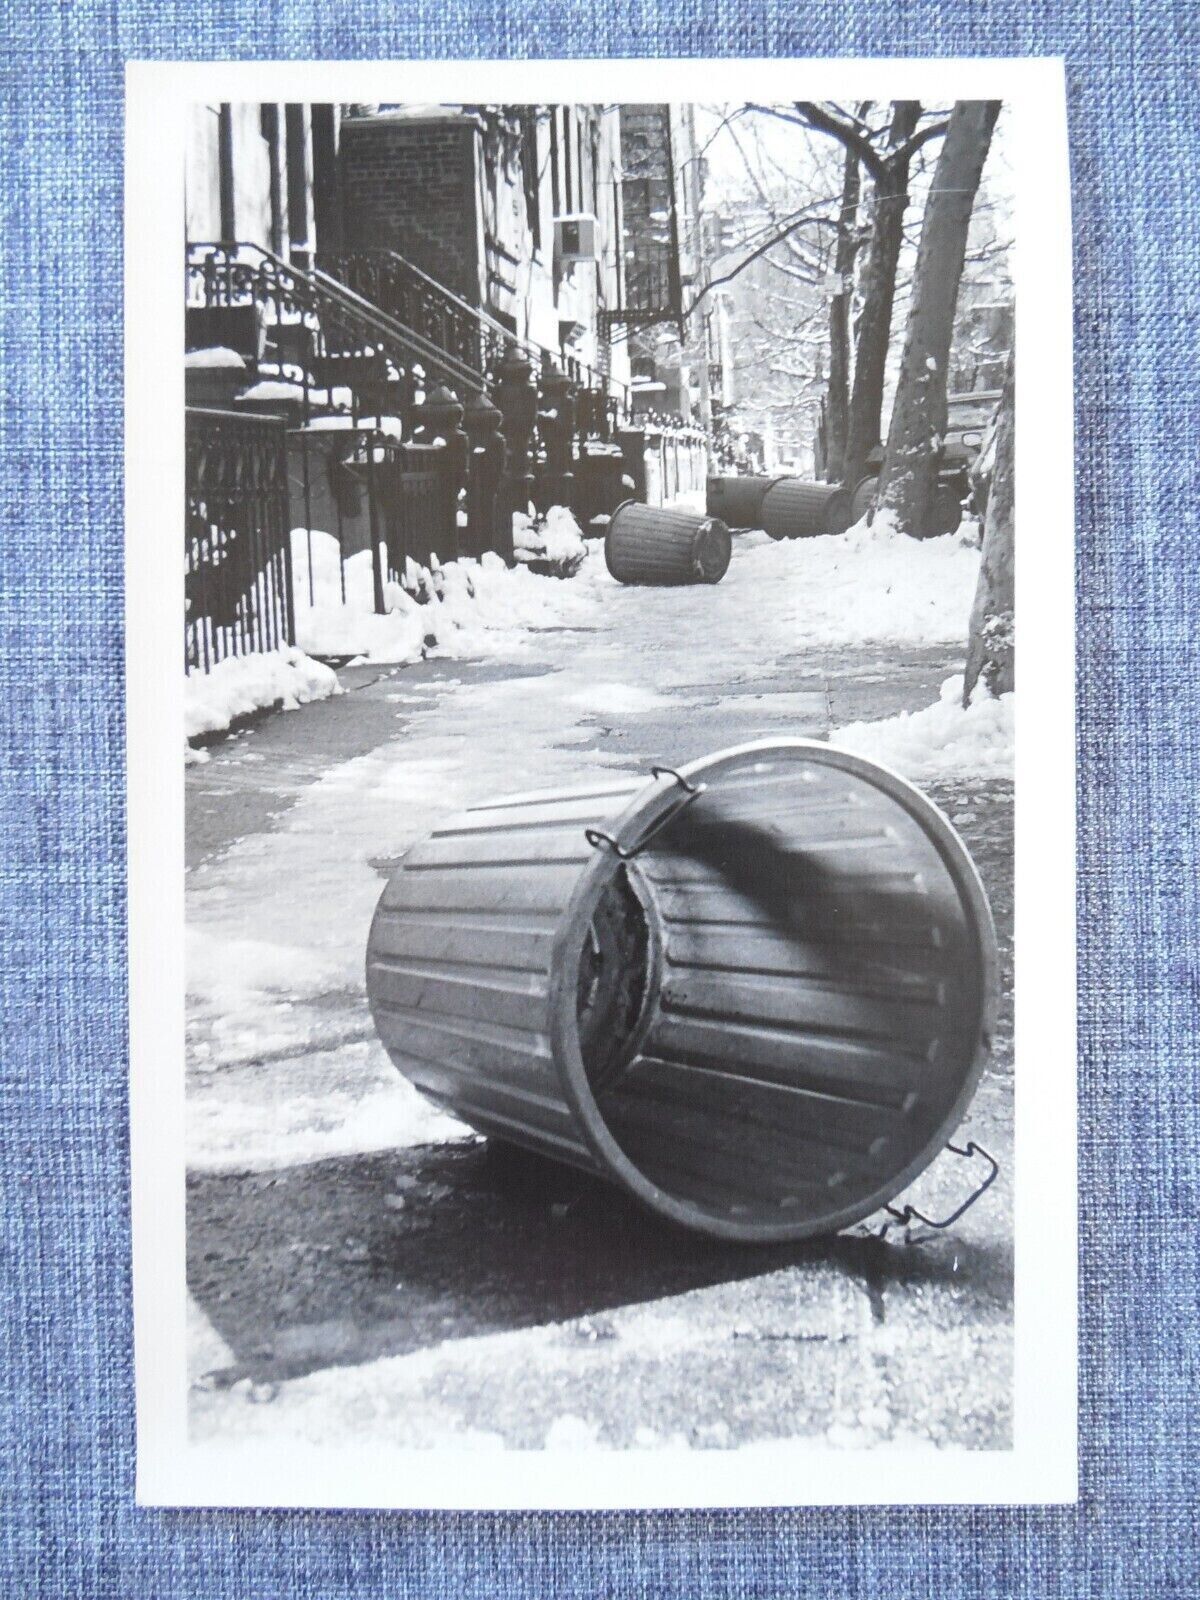 Brattleboro Vermont Vintage Photo Postcard Winter Street Scene unposted 1980s